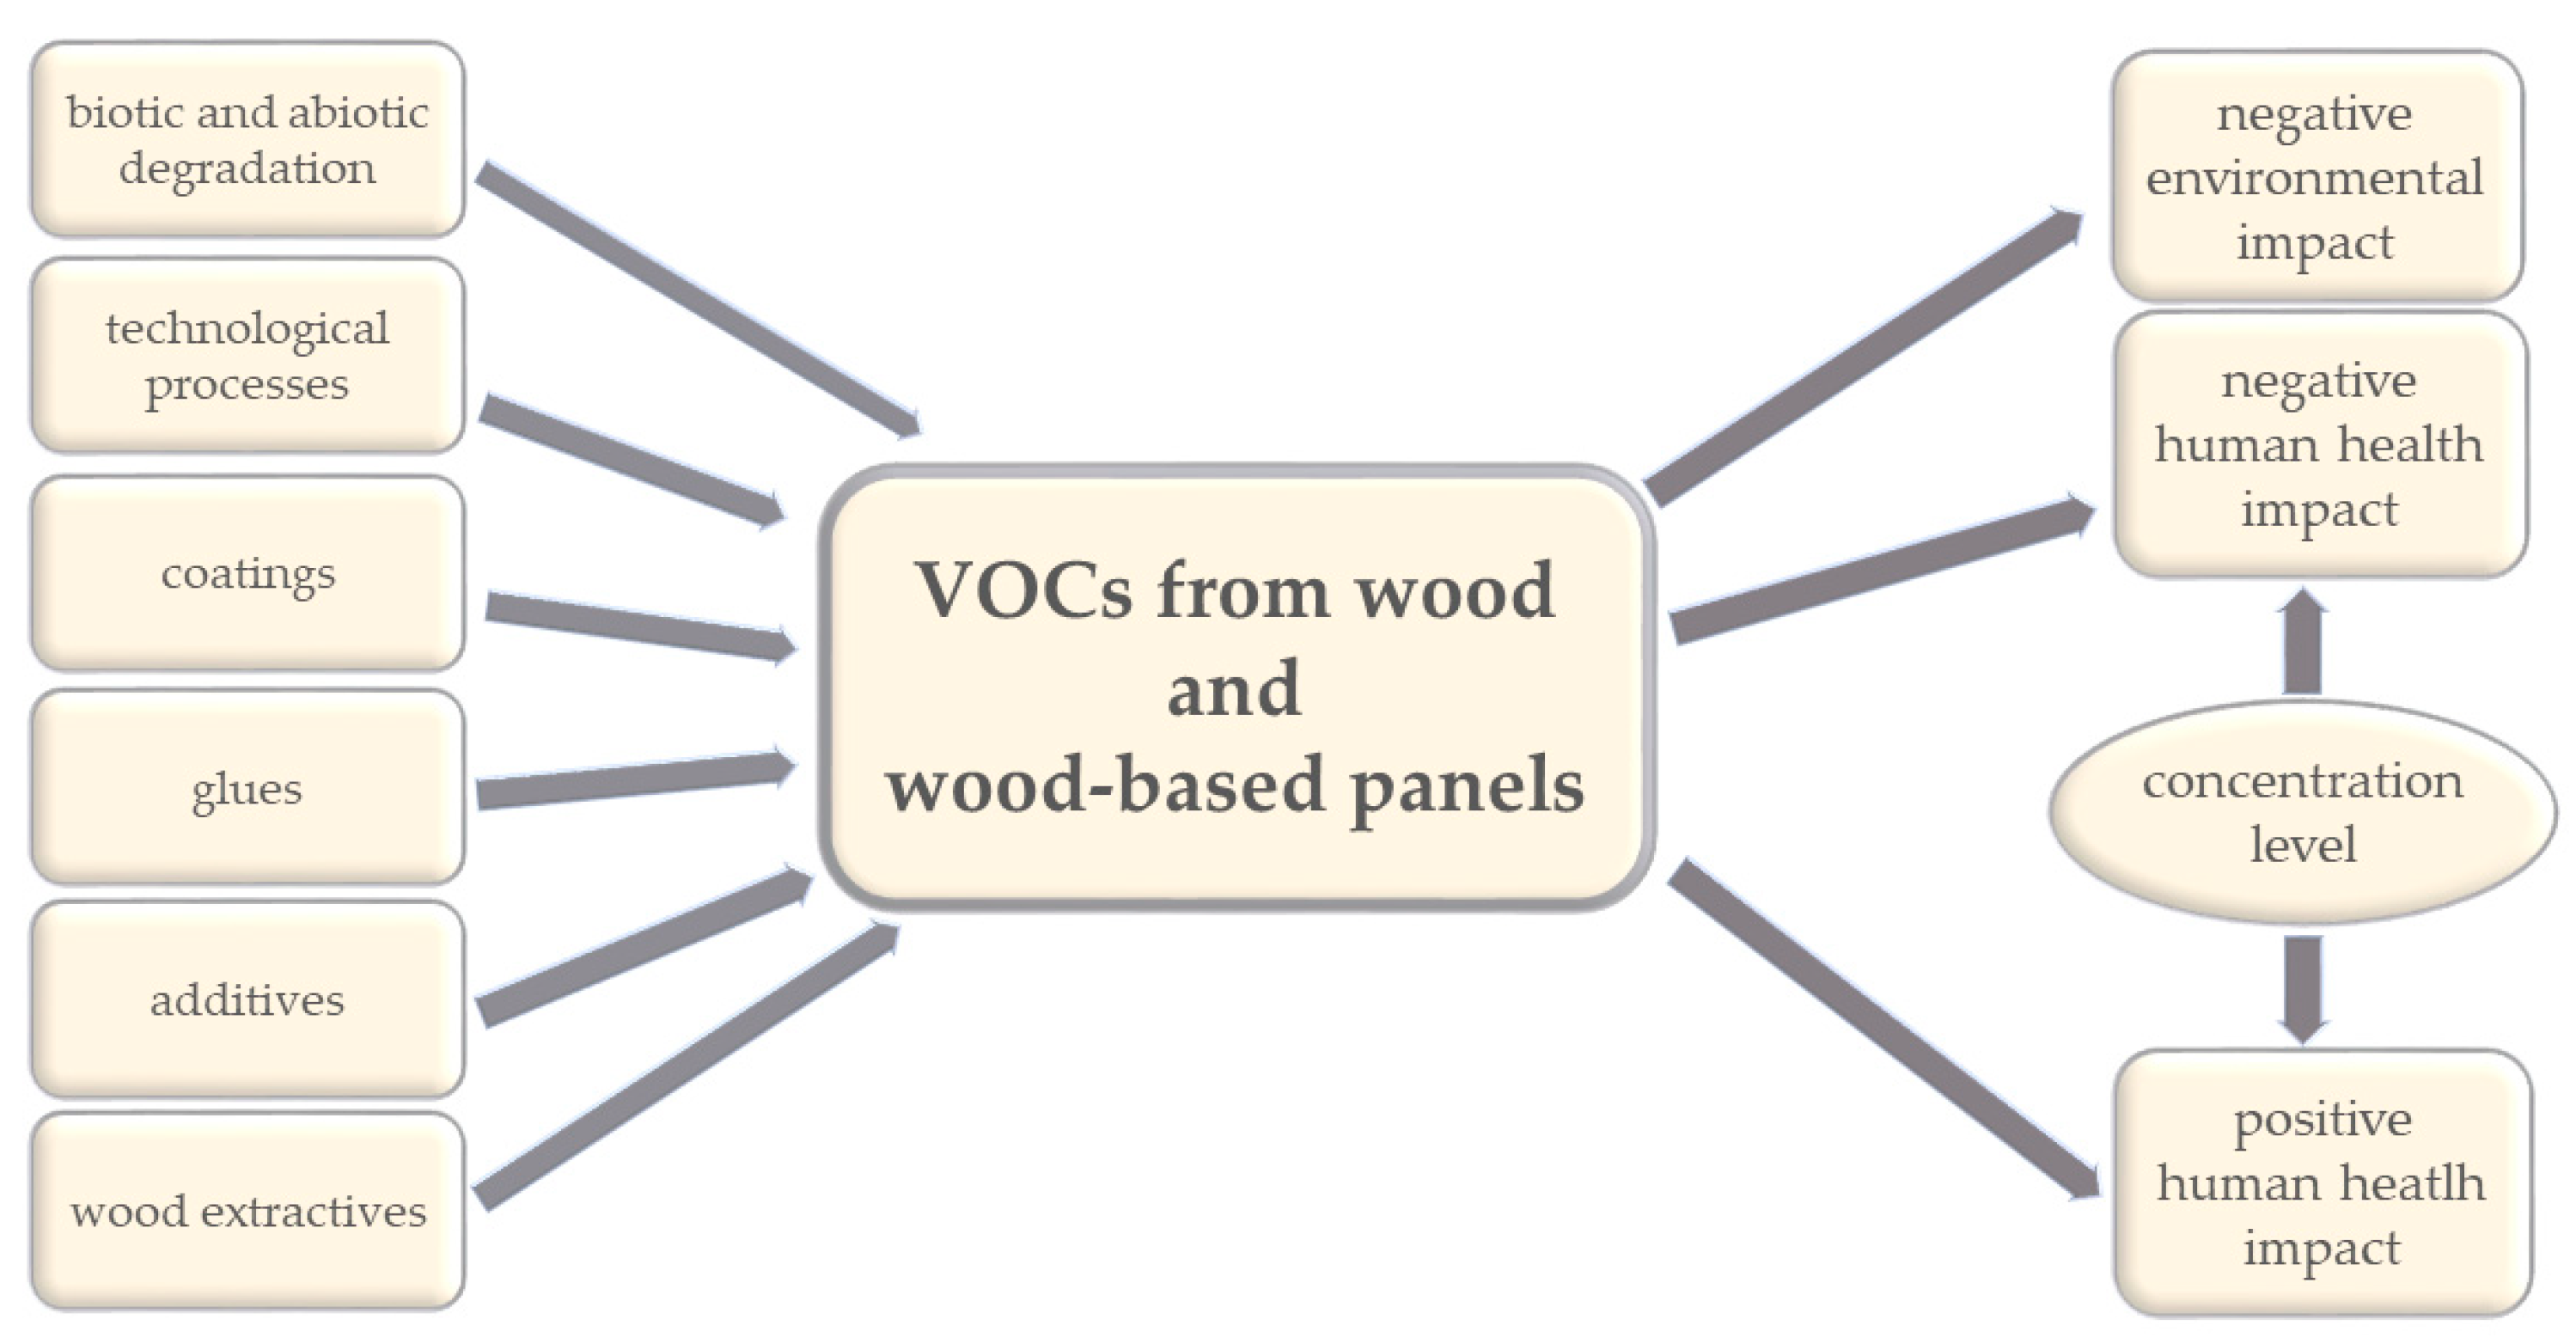 VOC Content, Determining VOC Content, Article